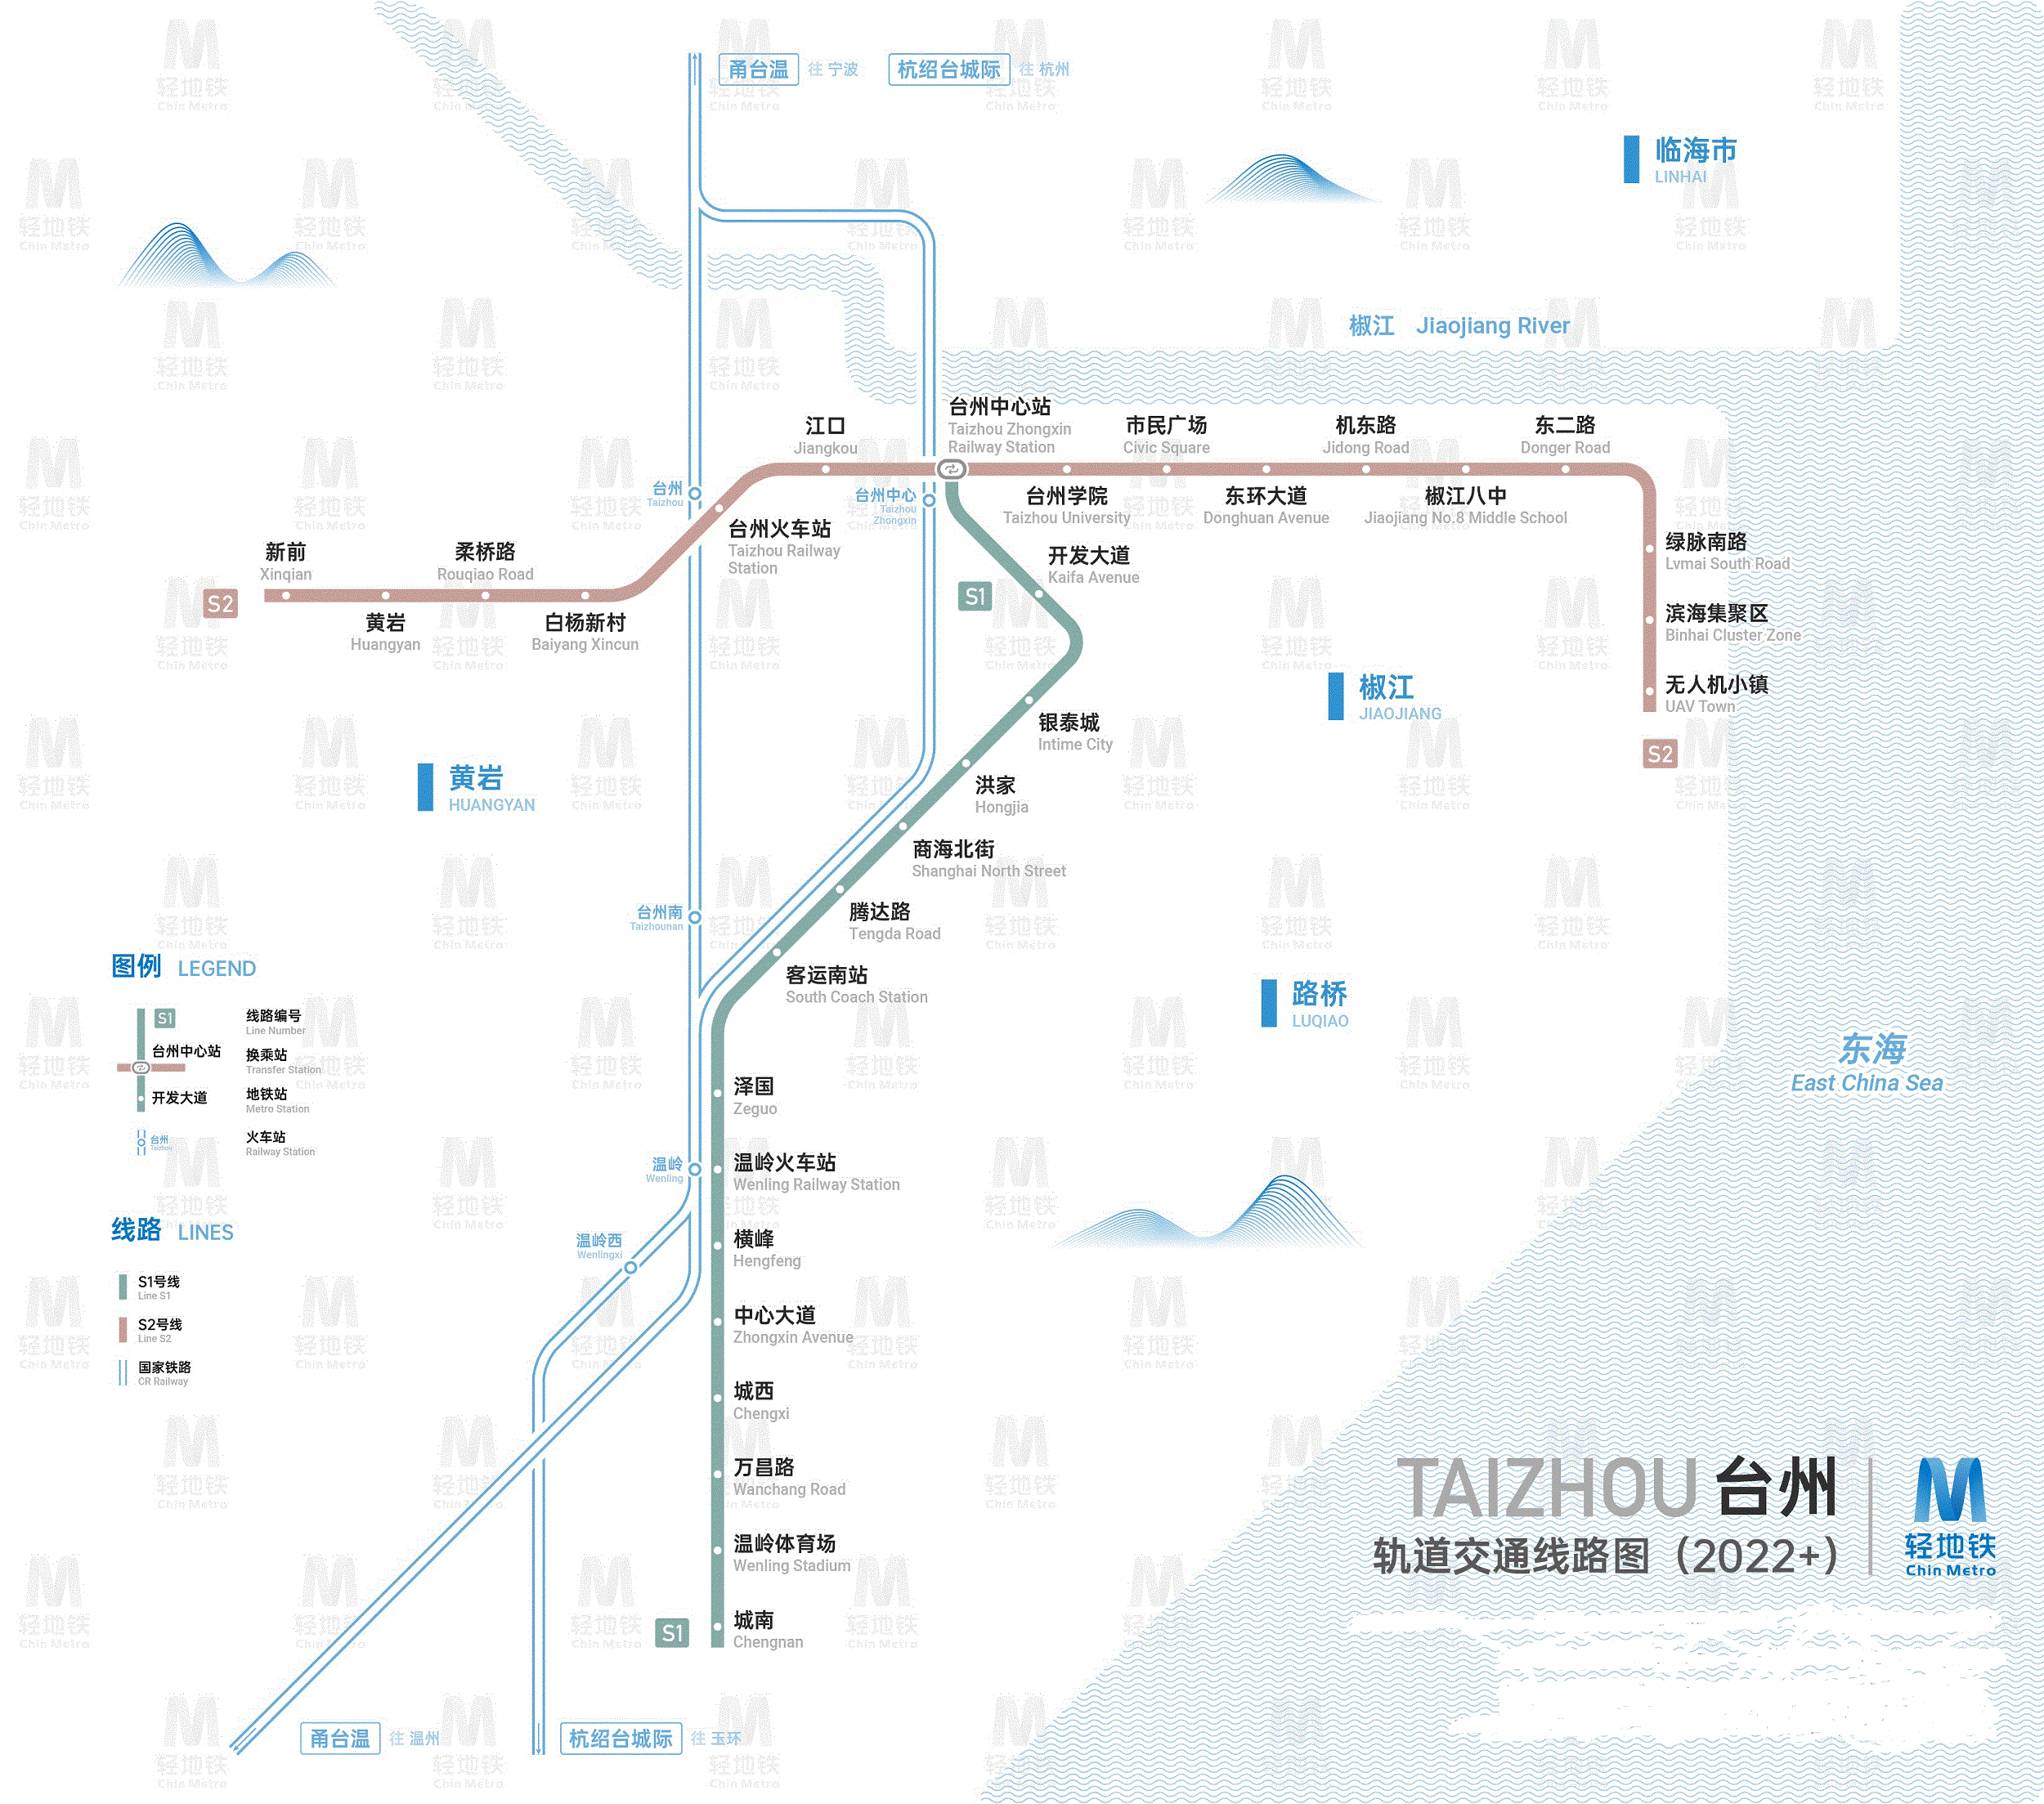 台州轨道交通近期将建设有2条线路,分别为 台州轨道交通s1线,s2线